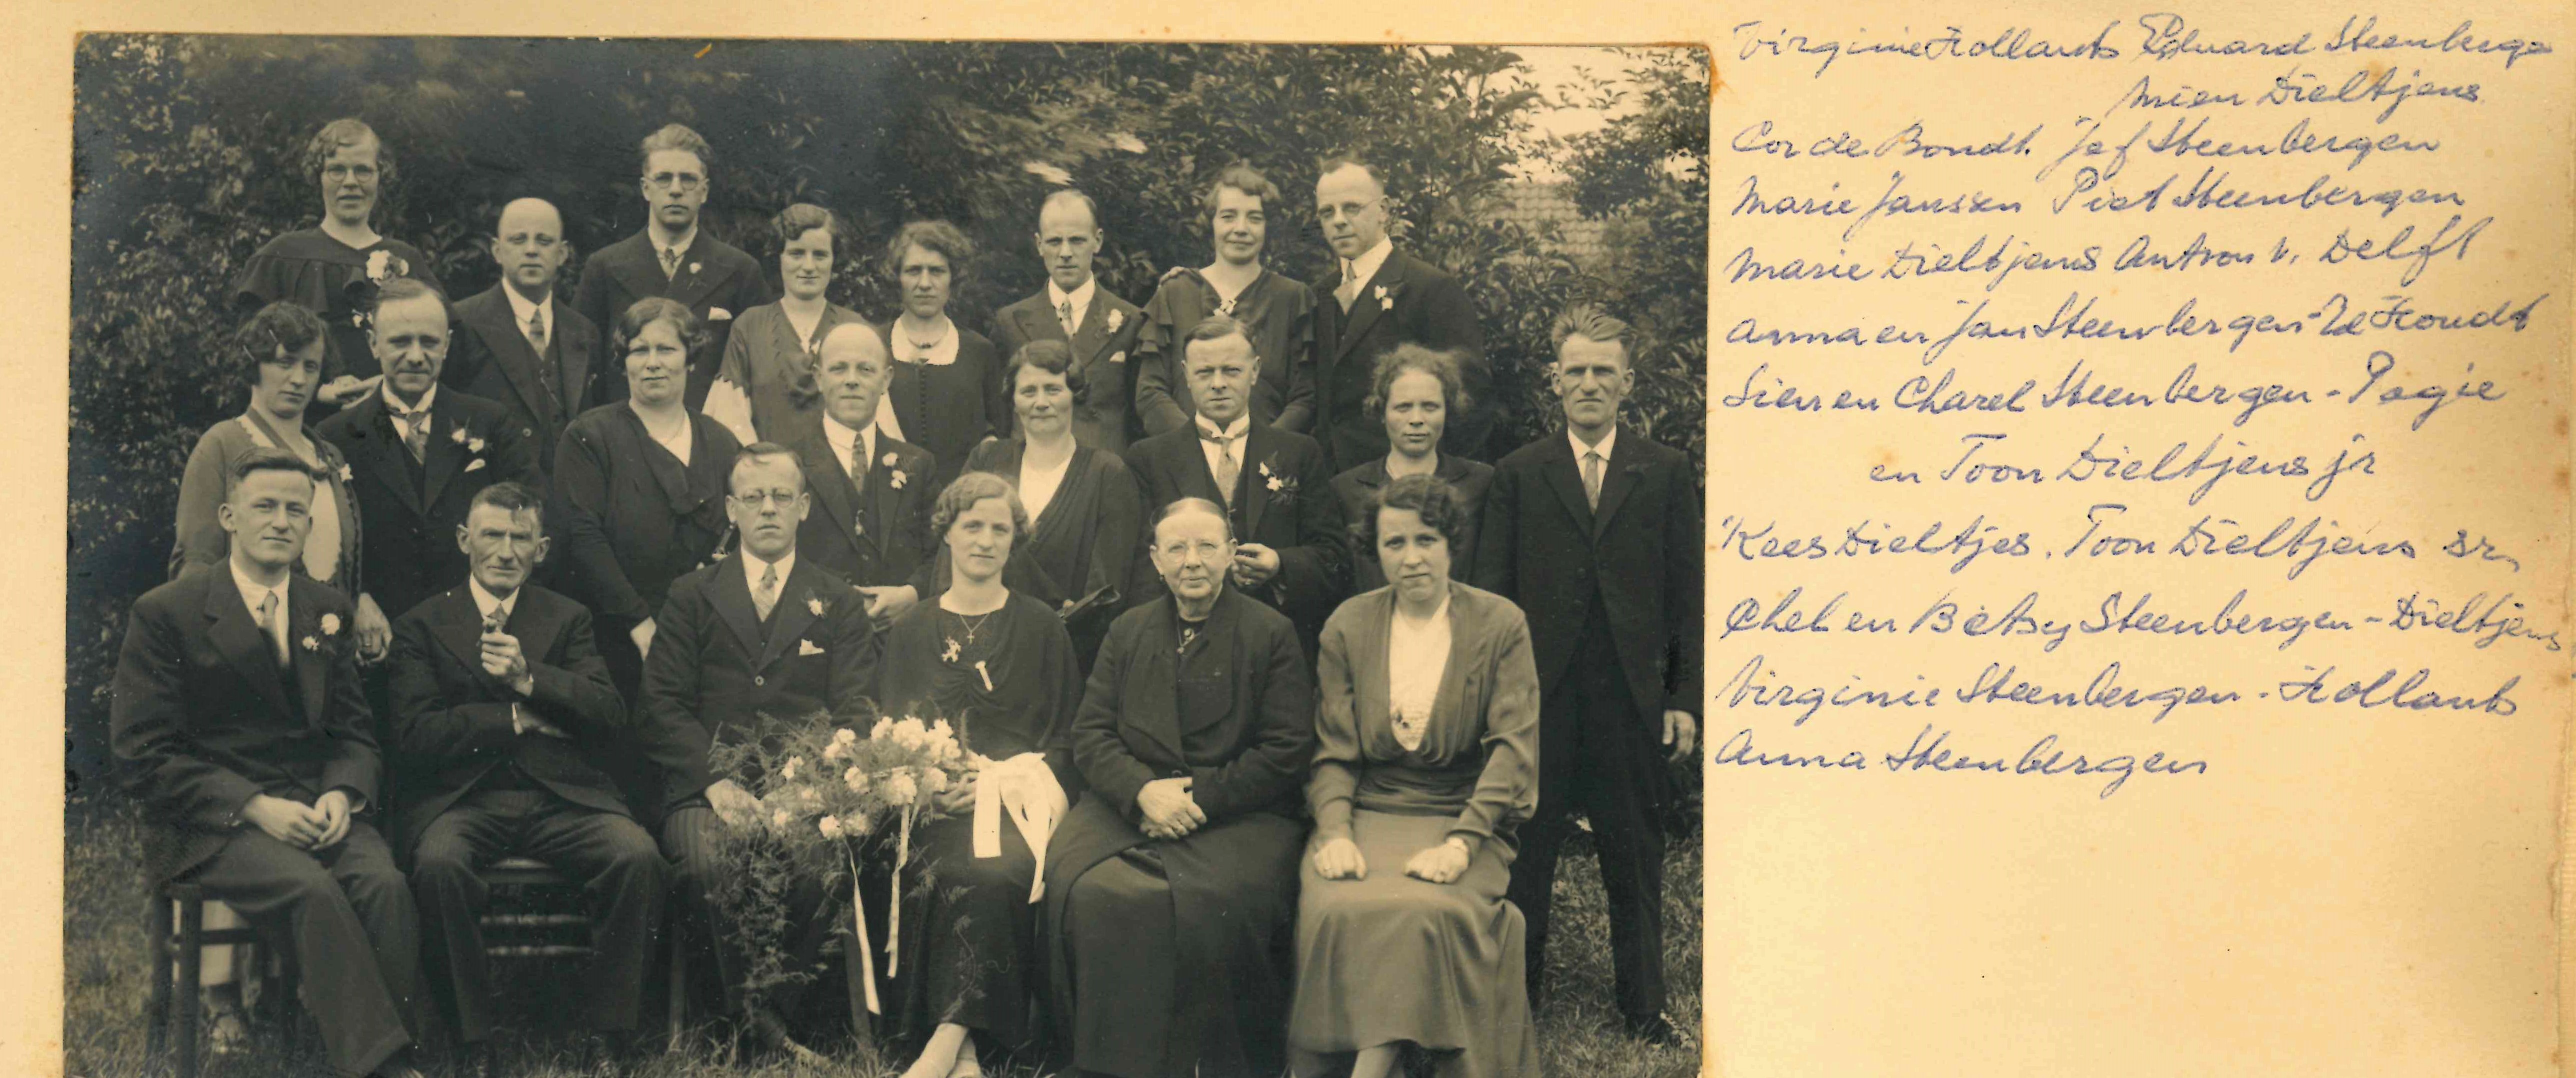 steenbergen_chel__en_bets_dieltjens_trouwen_in_1933_-_familie-album_virs_steenbergen-hollants_p._72.jpg